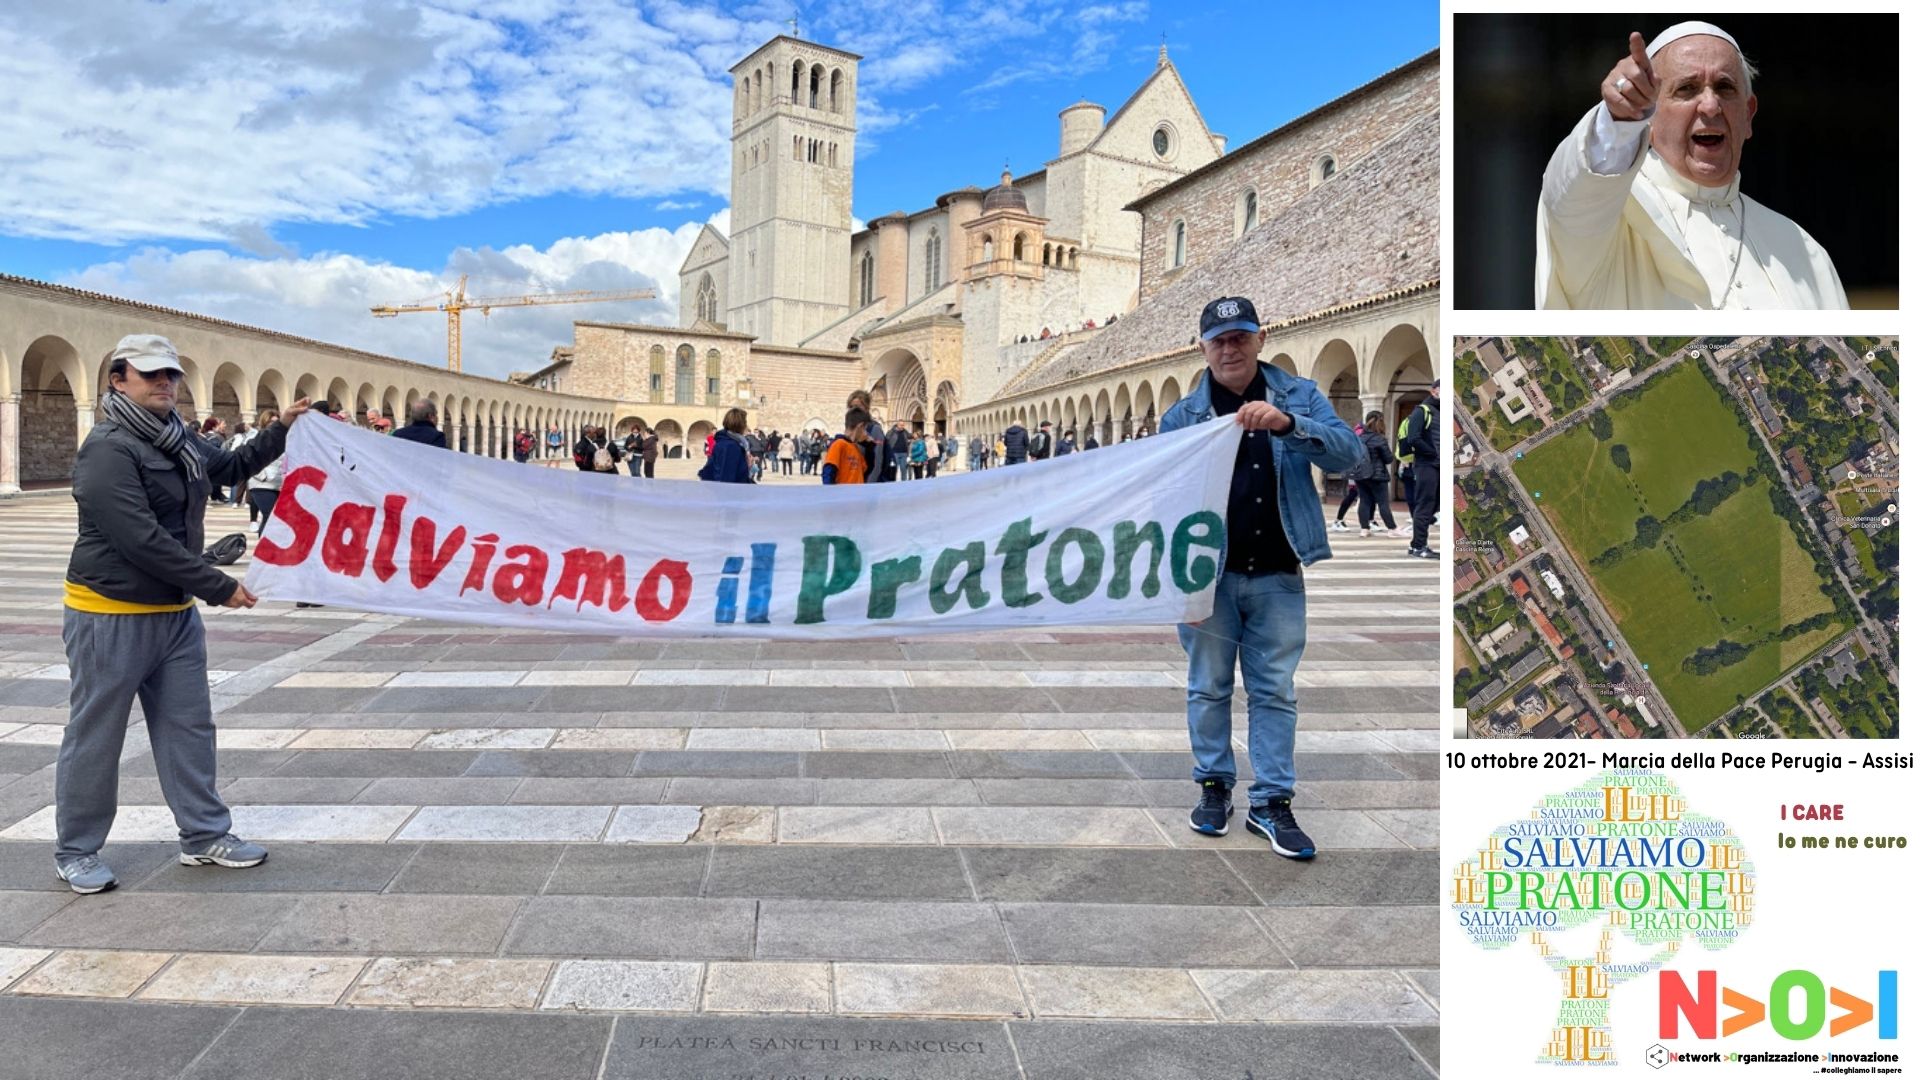 10 ottobre 2021- Marcia della Pace Perugia Assisi - Salviamo il PRATONE